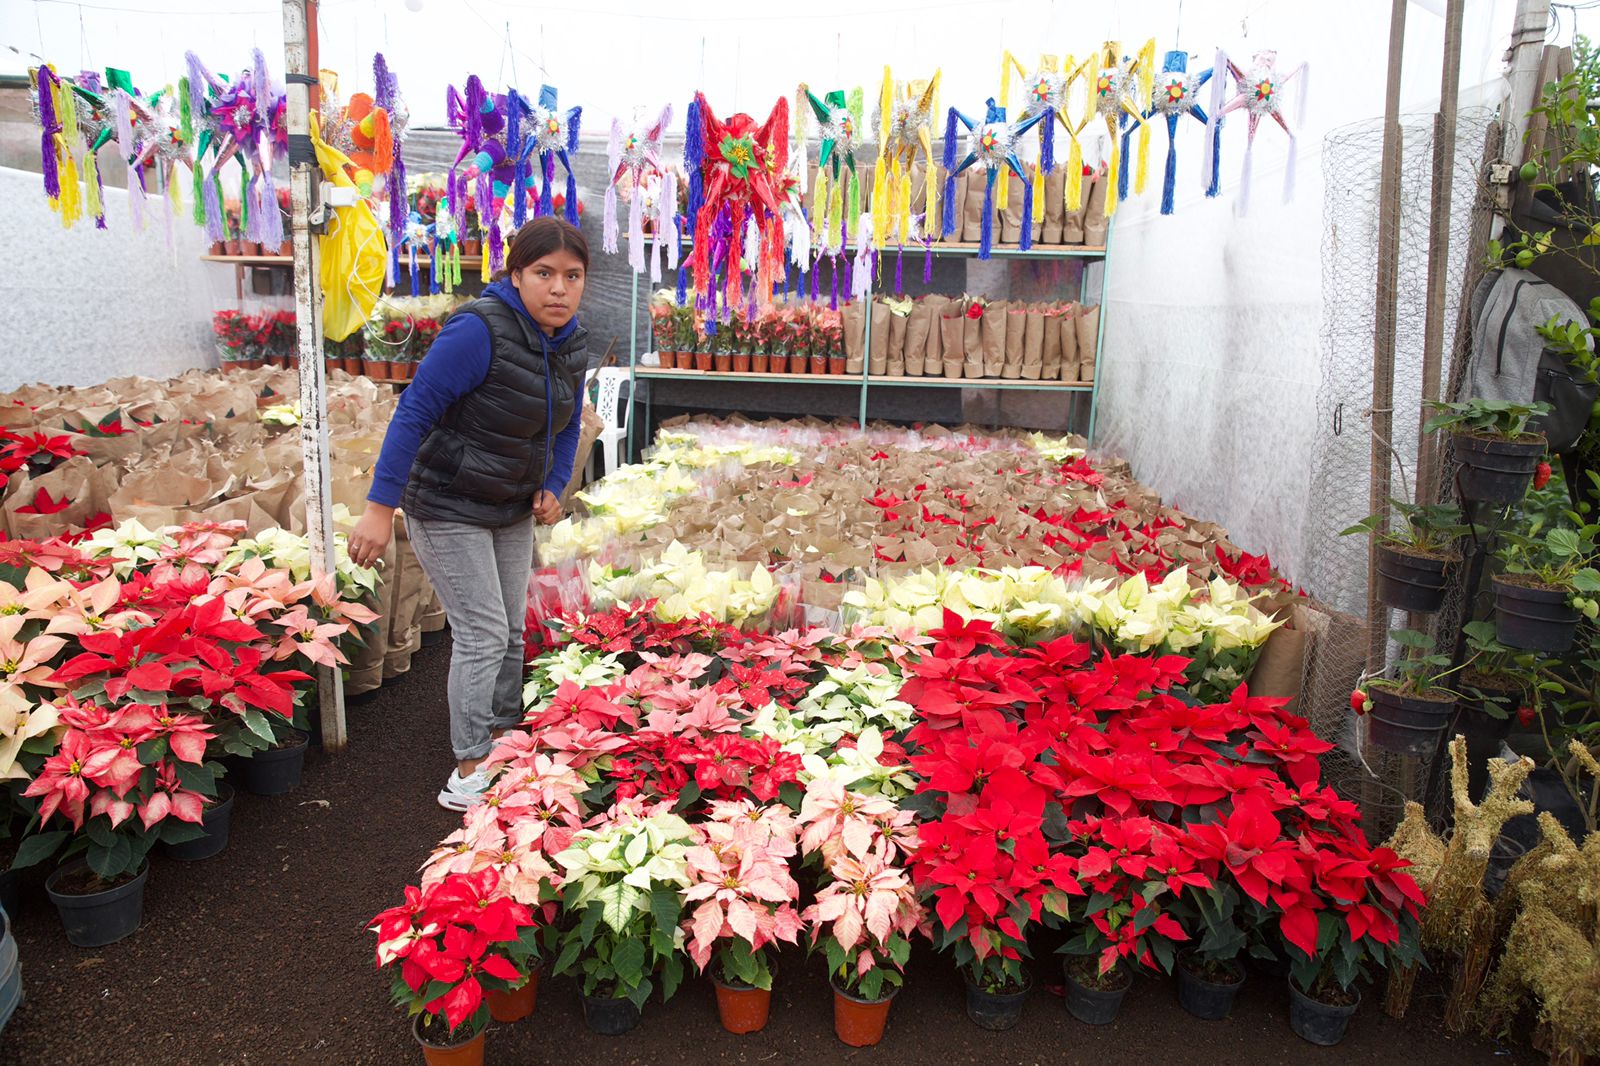 Los productores garantizan el abasto de la flor de Nochebuena en México